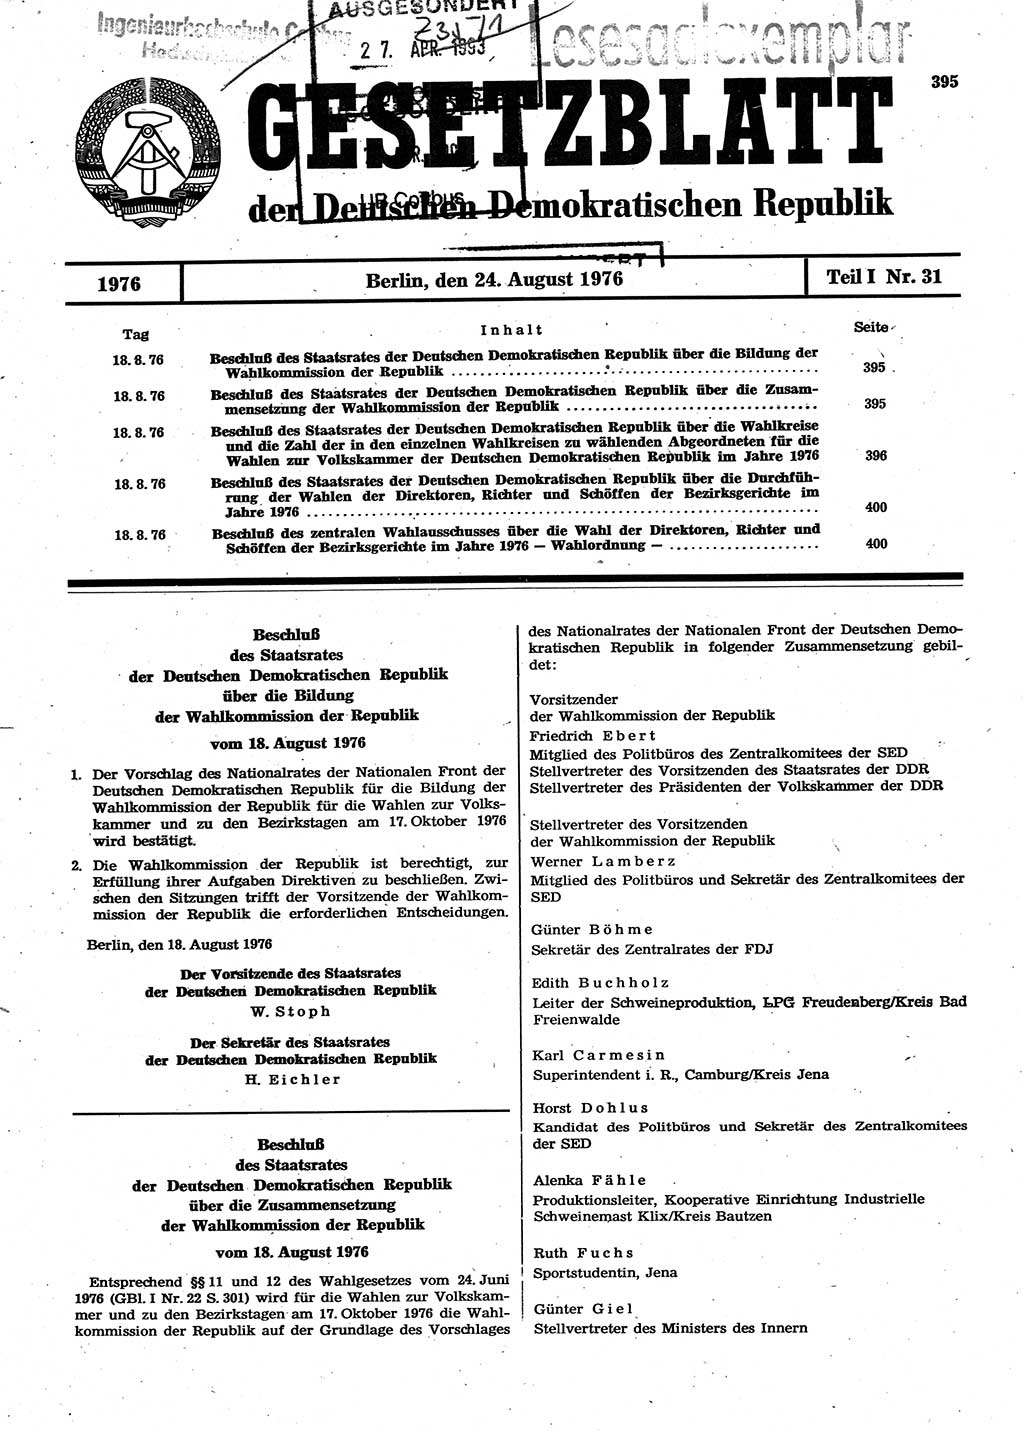 Gesetzblatt (GBl.) der Deutschen Demokratischen Republik (DDR) Teil Ⅰ 1976, Seite 395 (GBl. DDR Ⅰ 1976, S. 395)